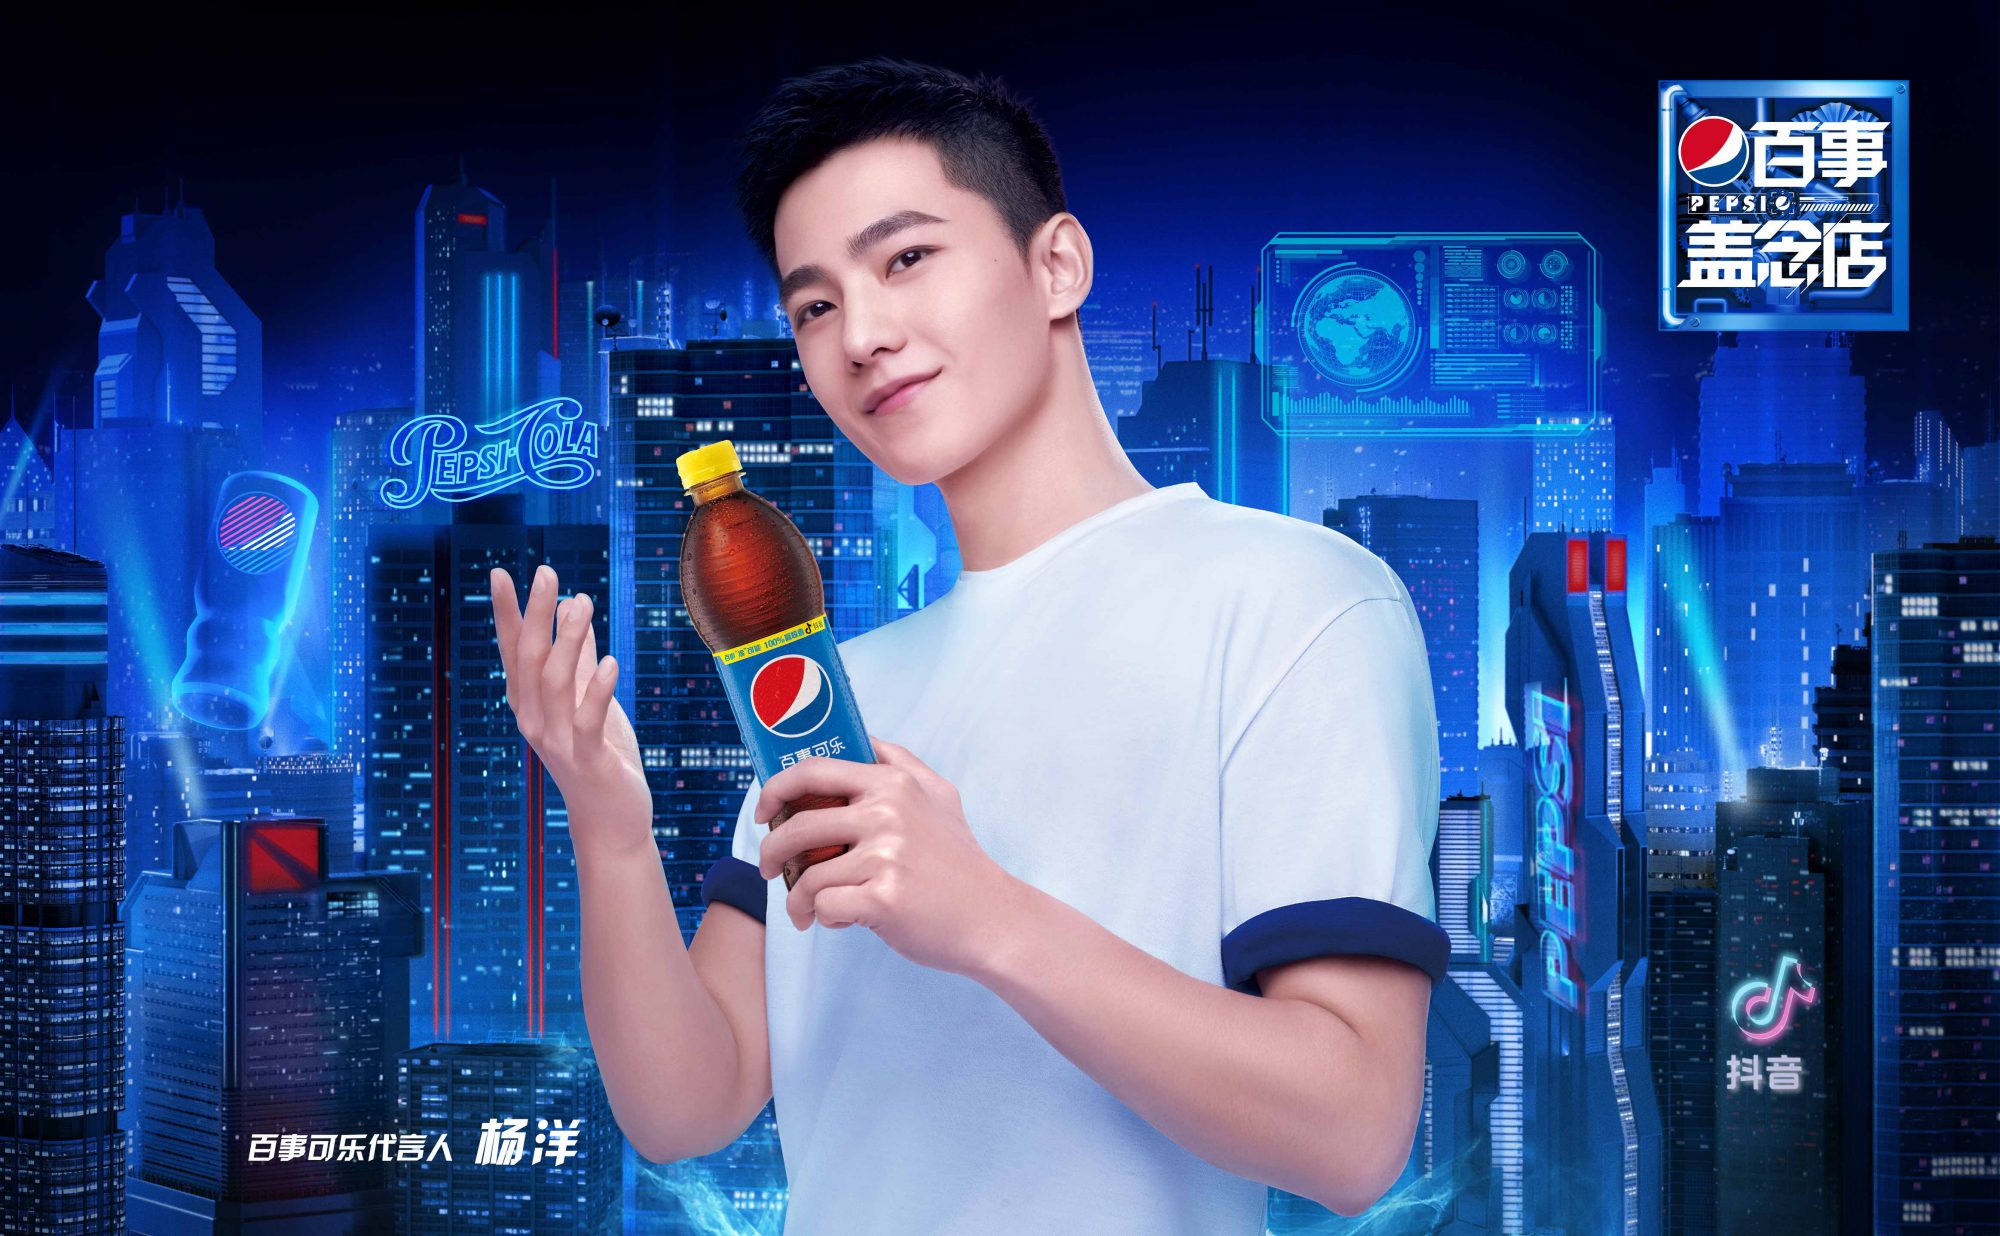 BC-Pepsi-China-2-2000x1236